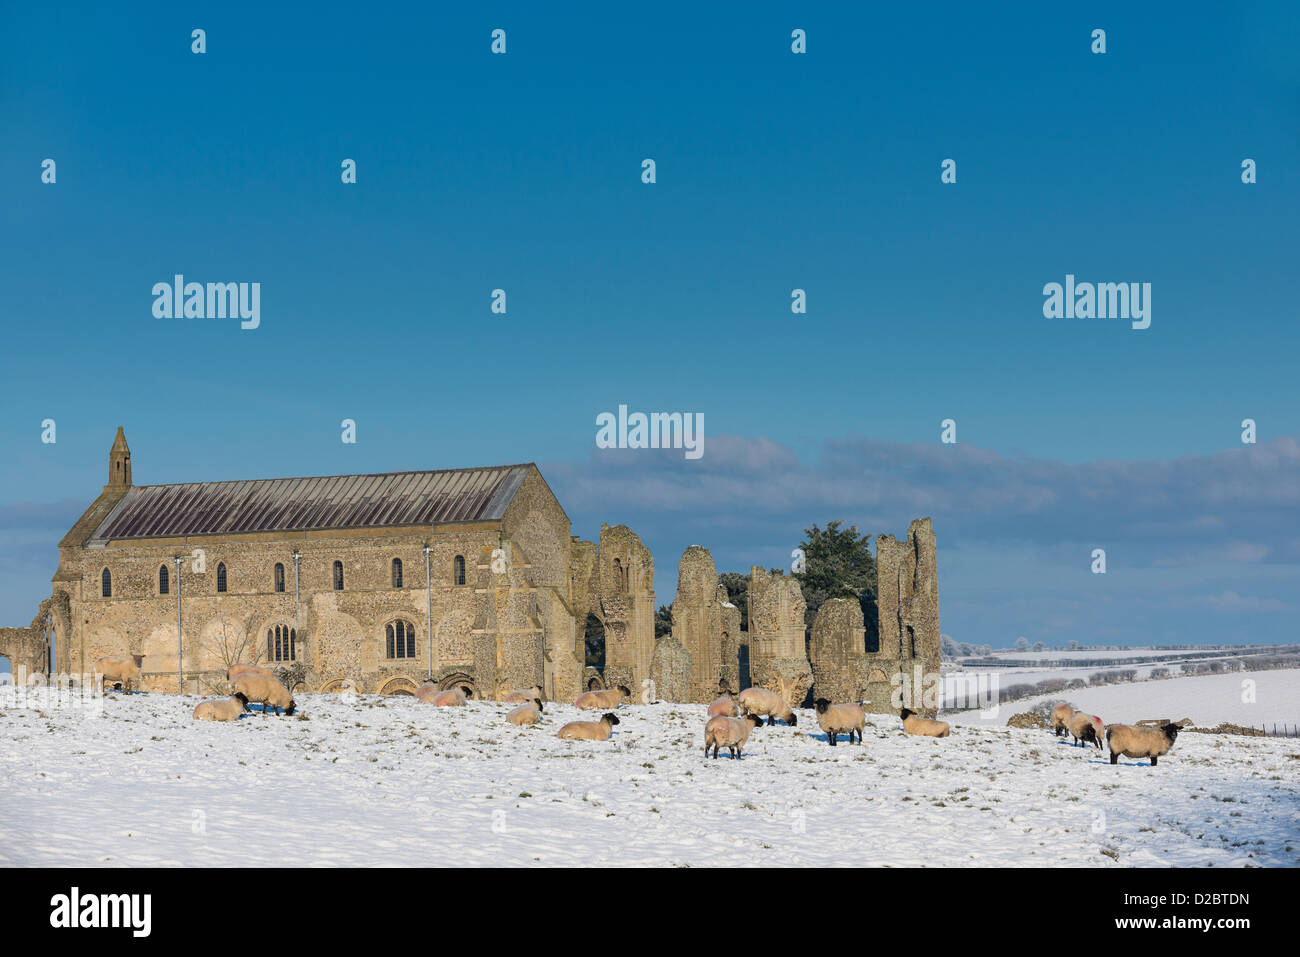 Le pâturage des moutons sur le terrain couvert de neige, avec Binham prieuré en arrière-plan, Norfolk, Angleterre, Janvier Banque D'Images